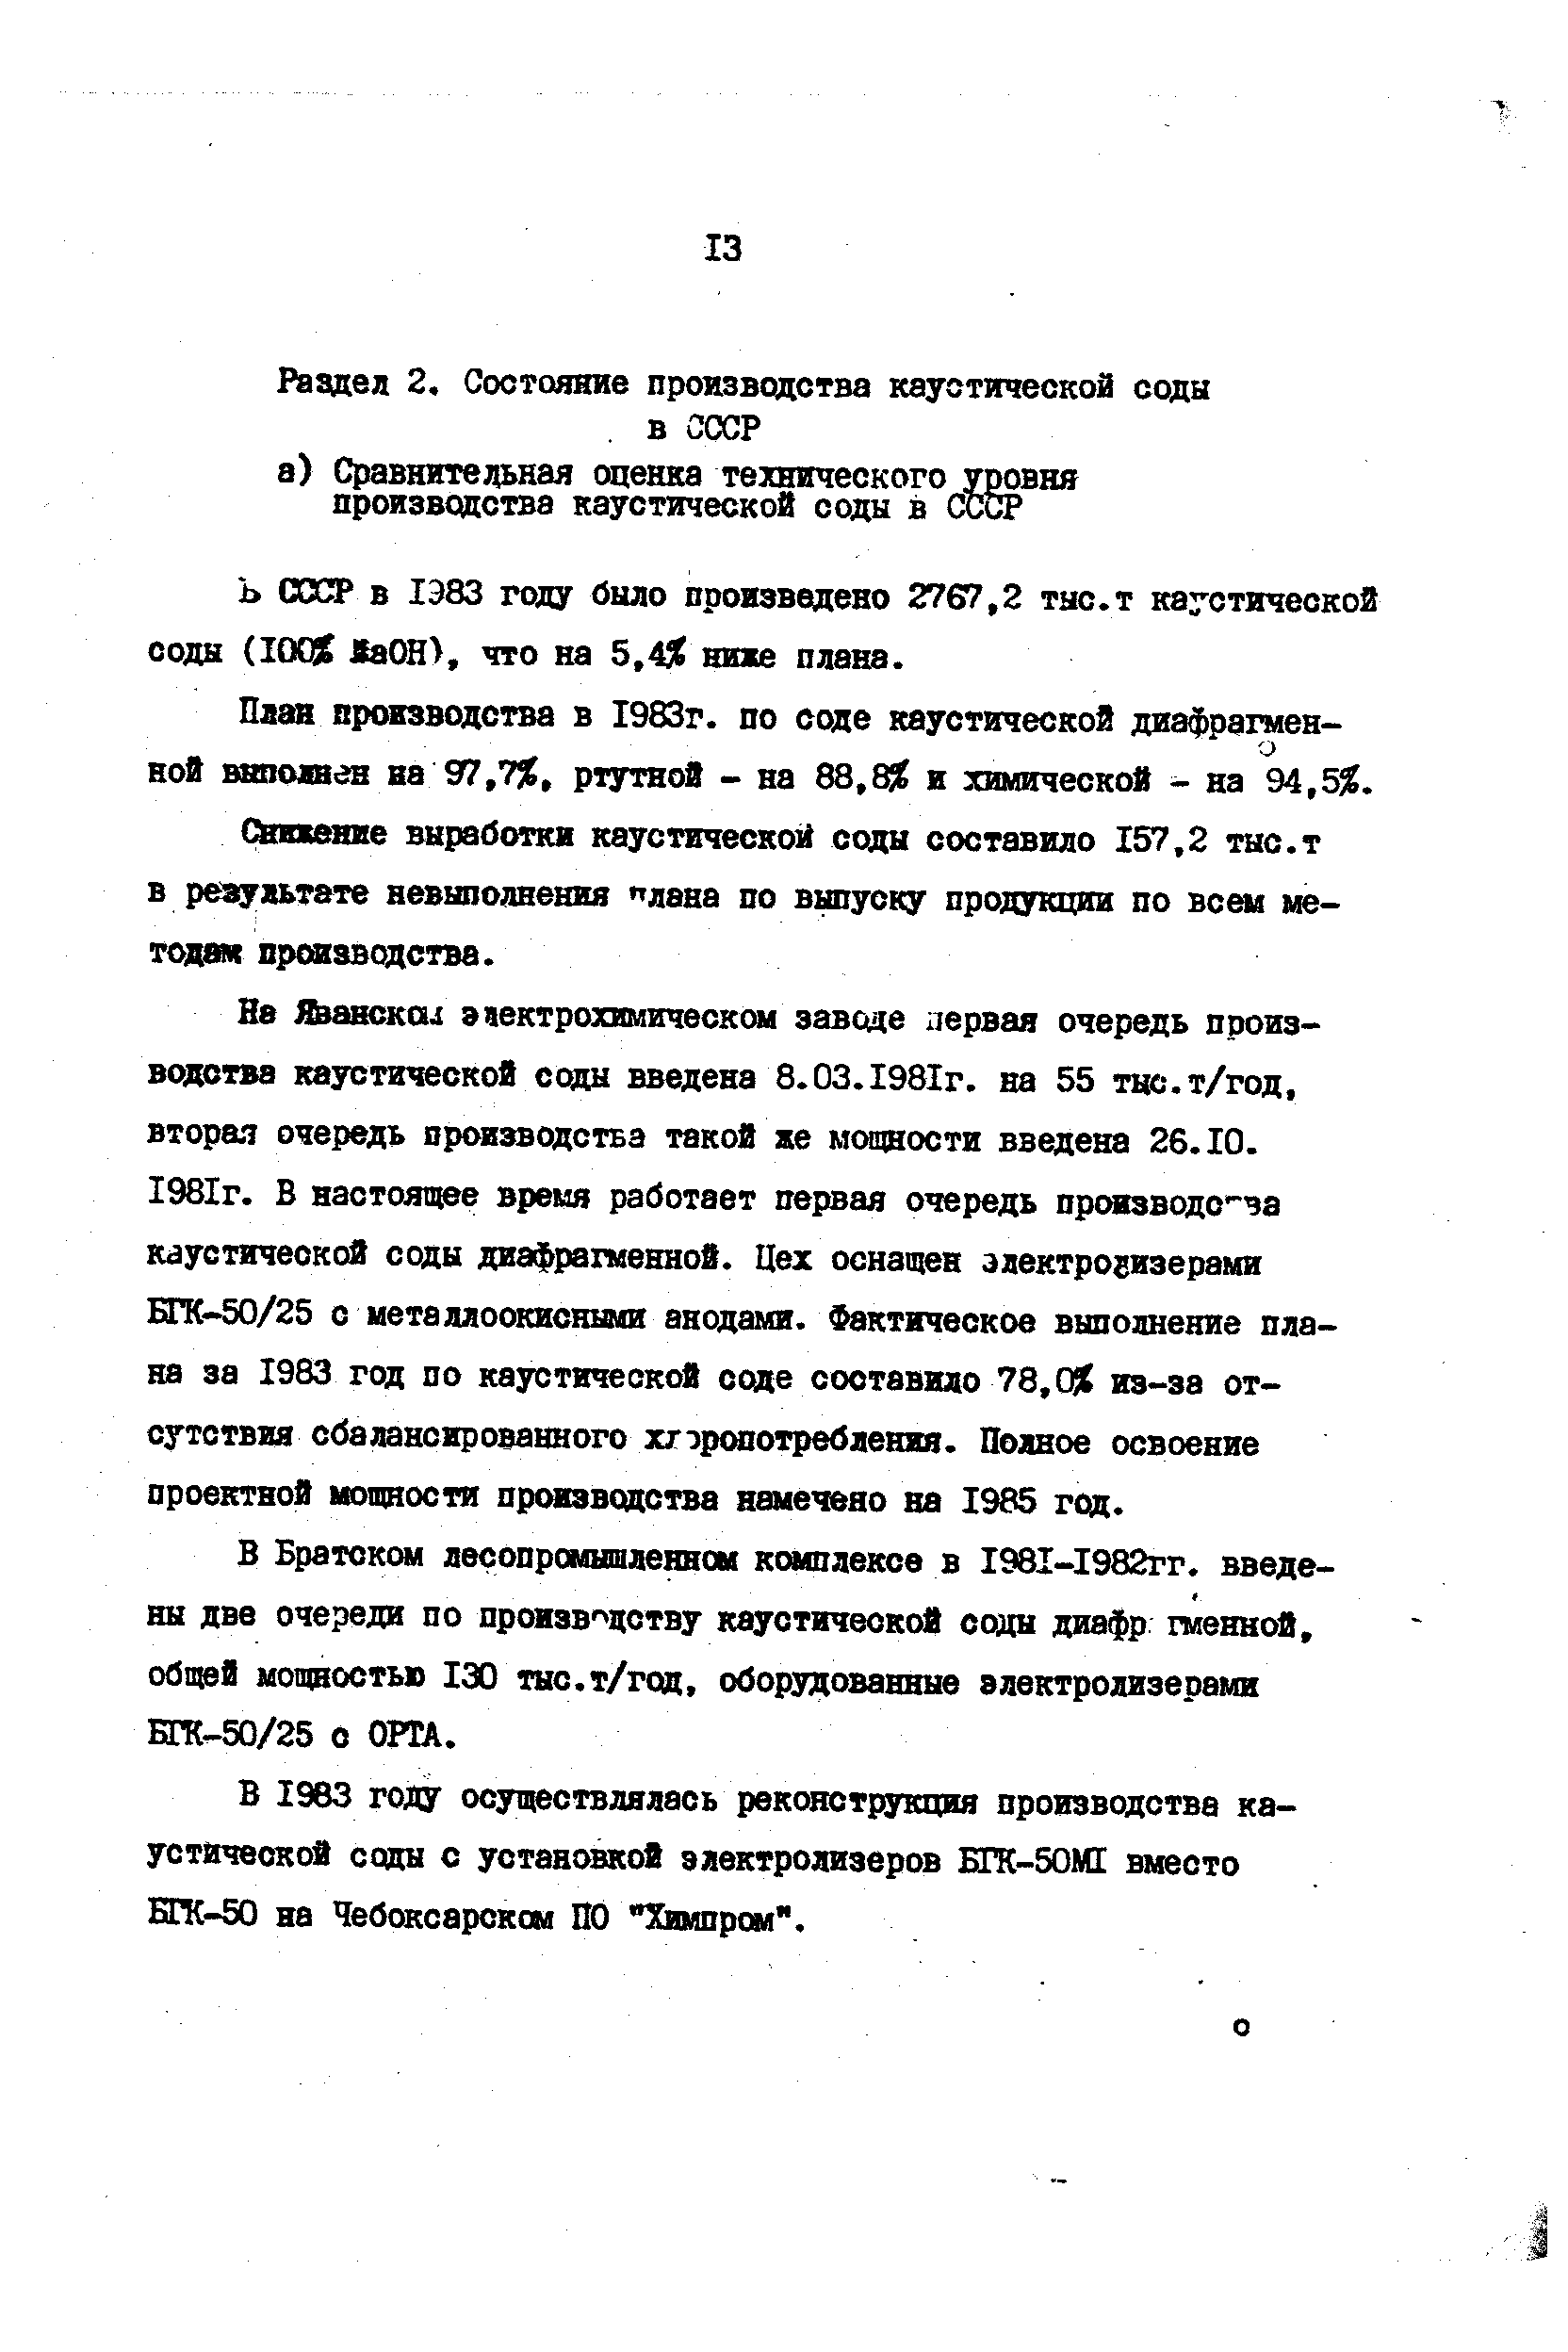 В 1983 году осуществлялась реконструкция производства каустической соды с установкой электролизеров ЕГК-50М1 вместо БГК-50 на Чебоксарском ПО Химпром .